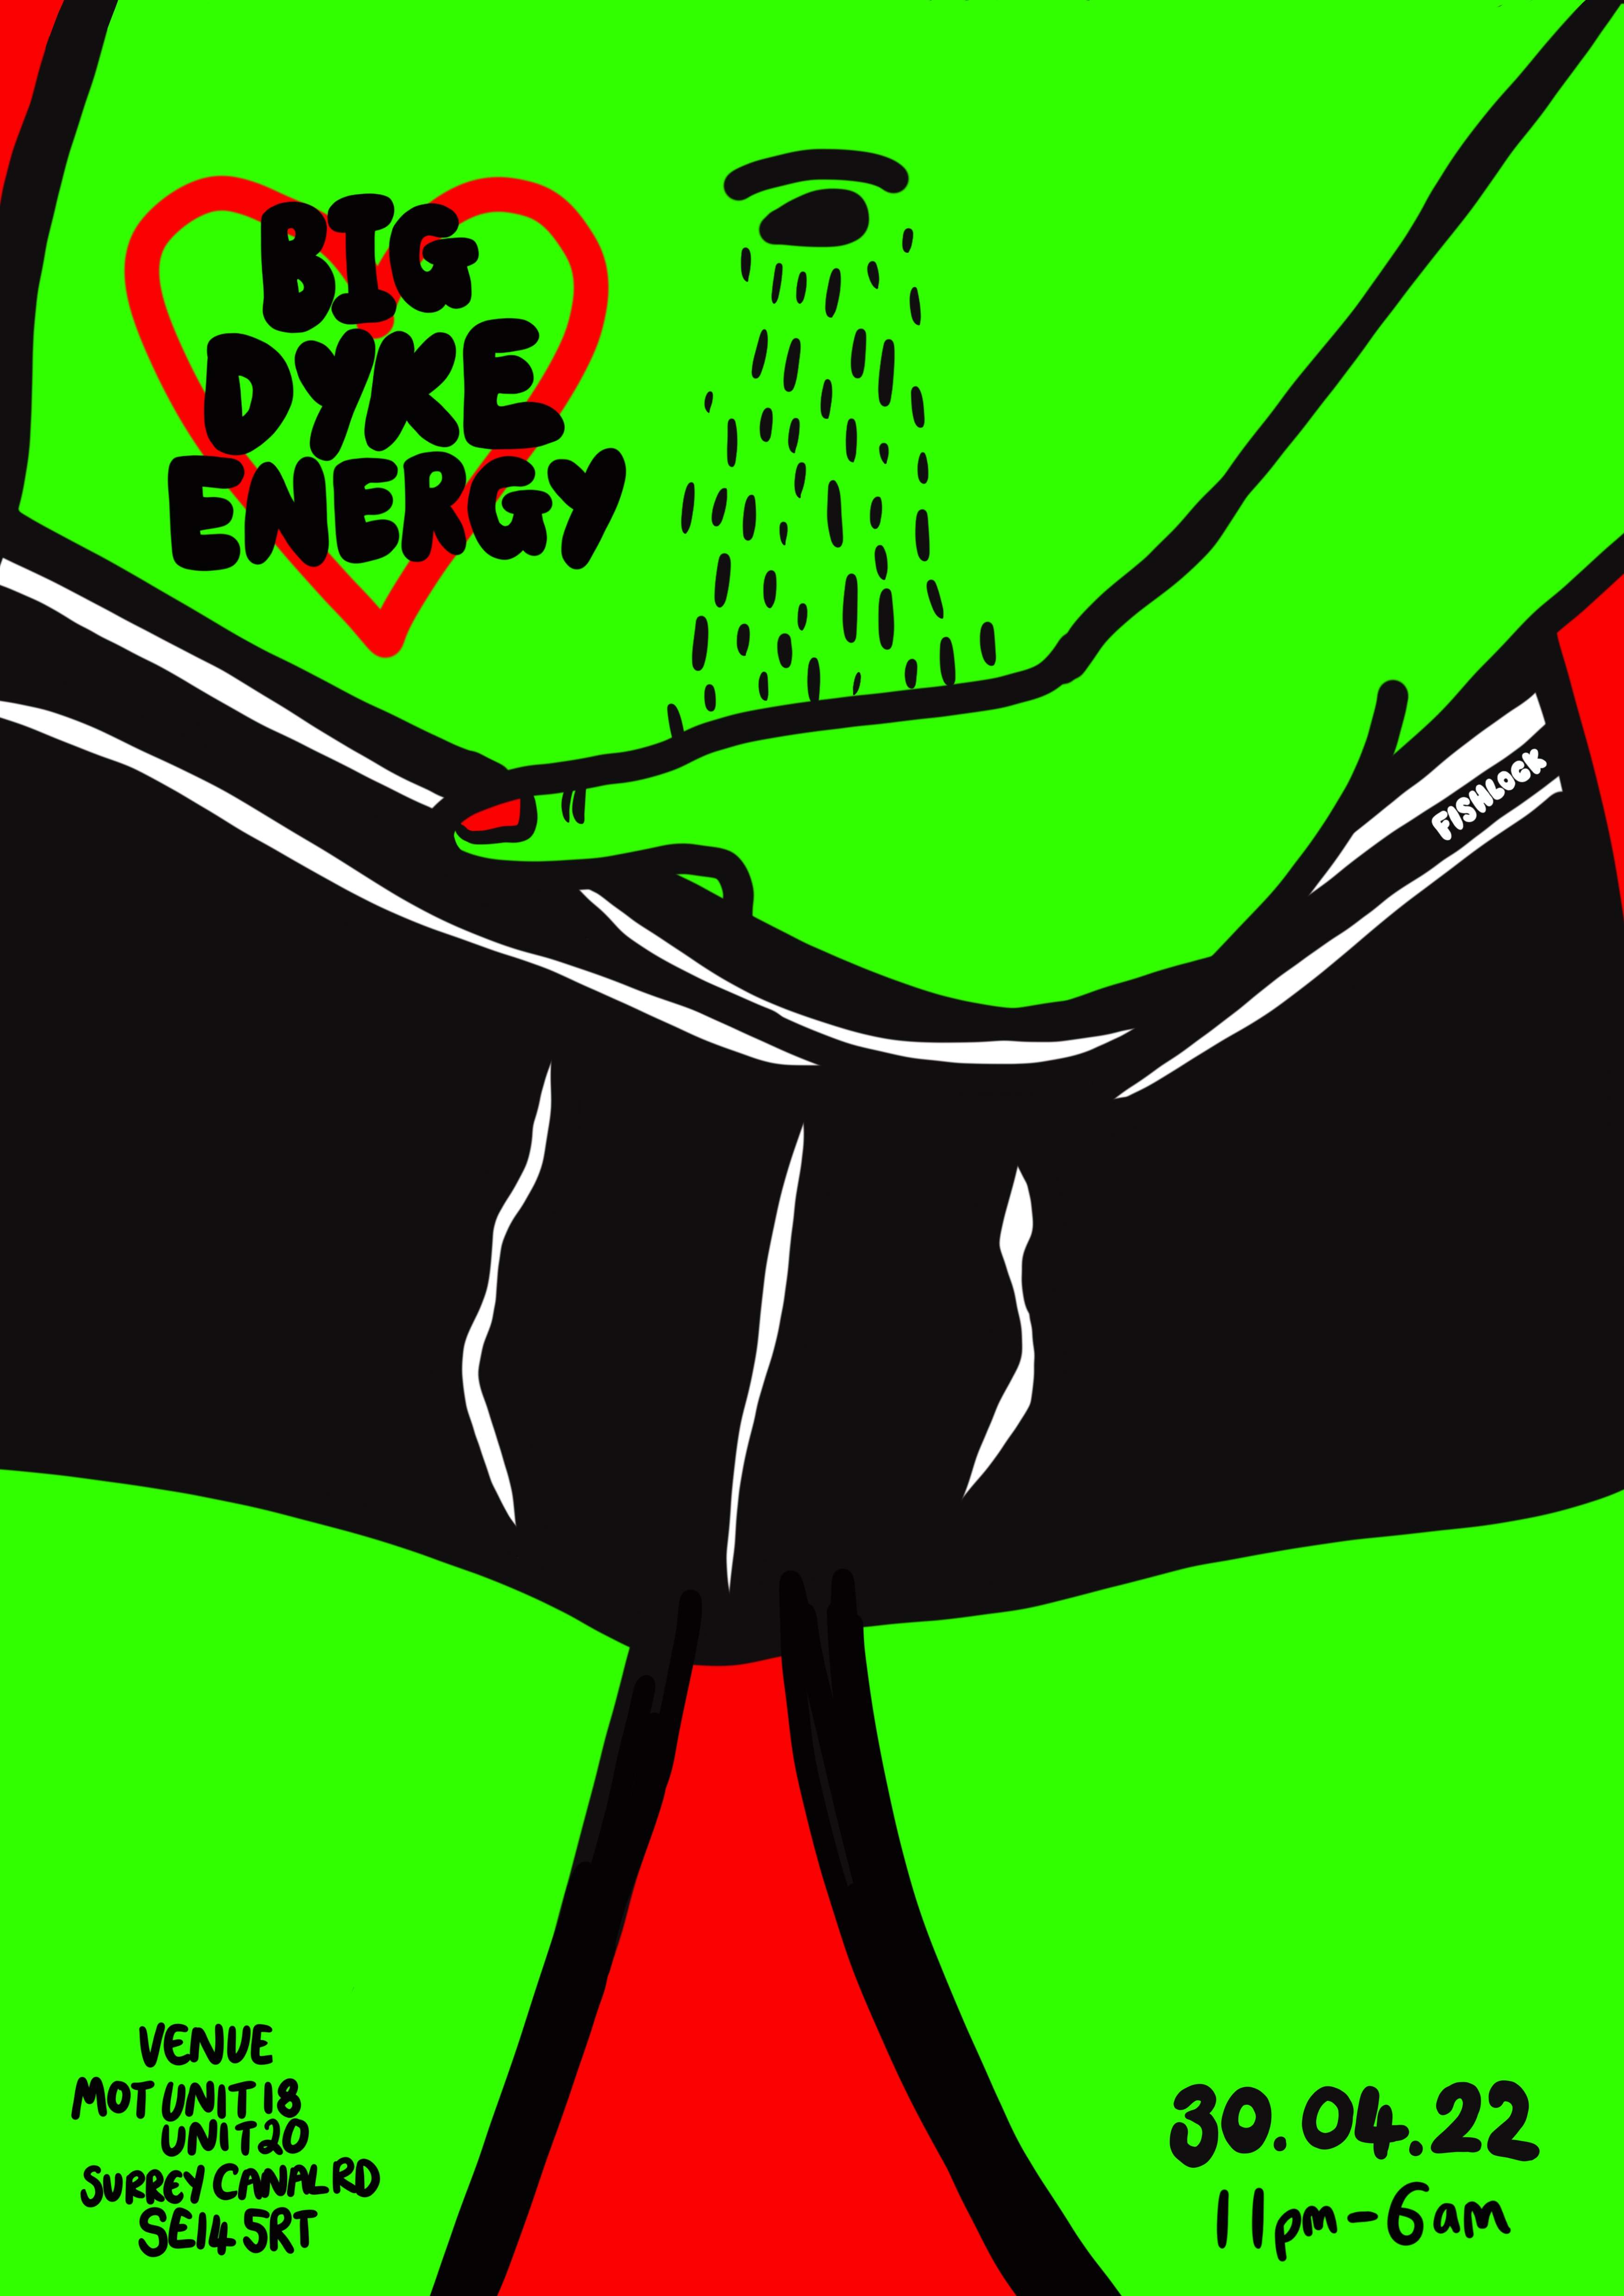 Big Dyke Energy 007 - Página frontal